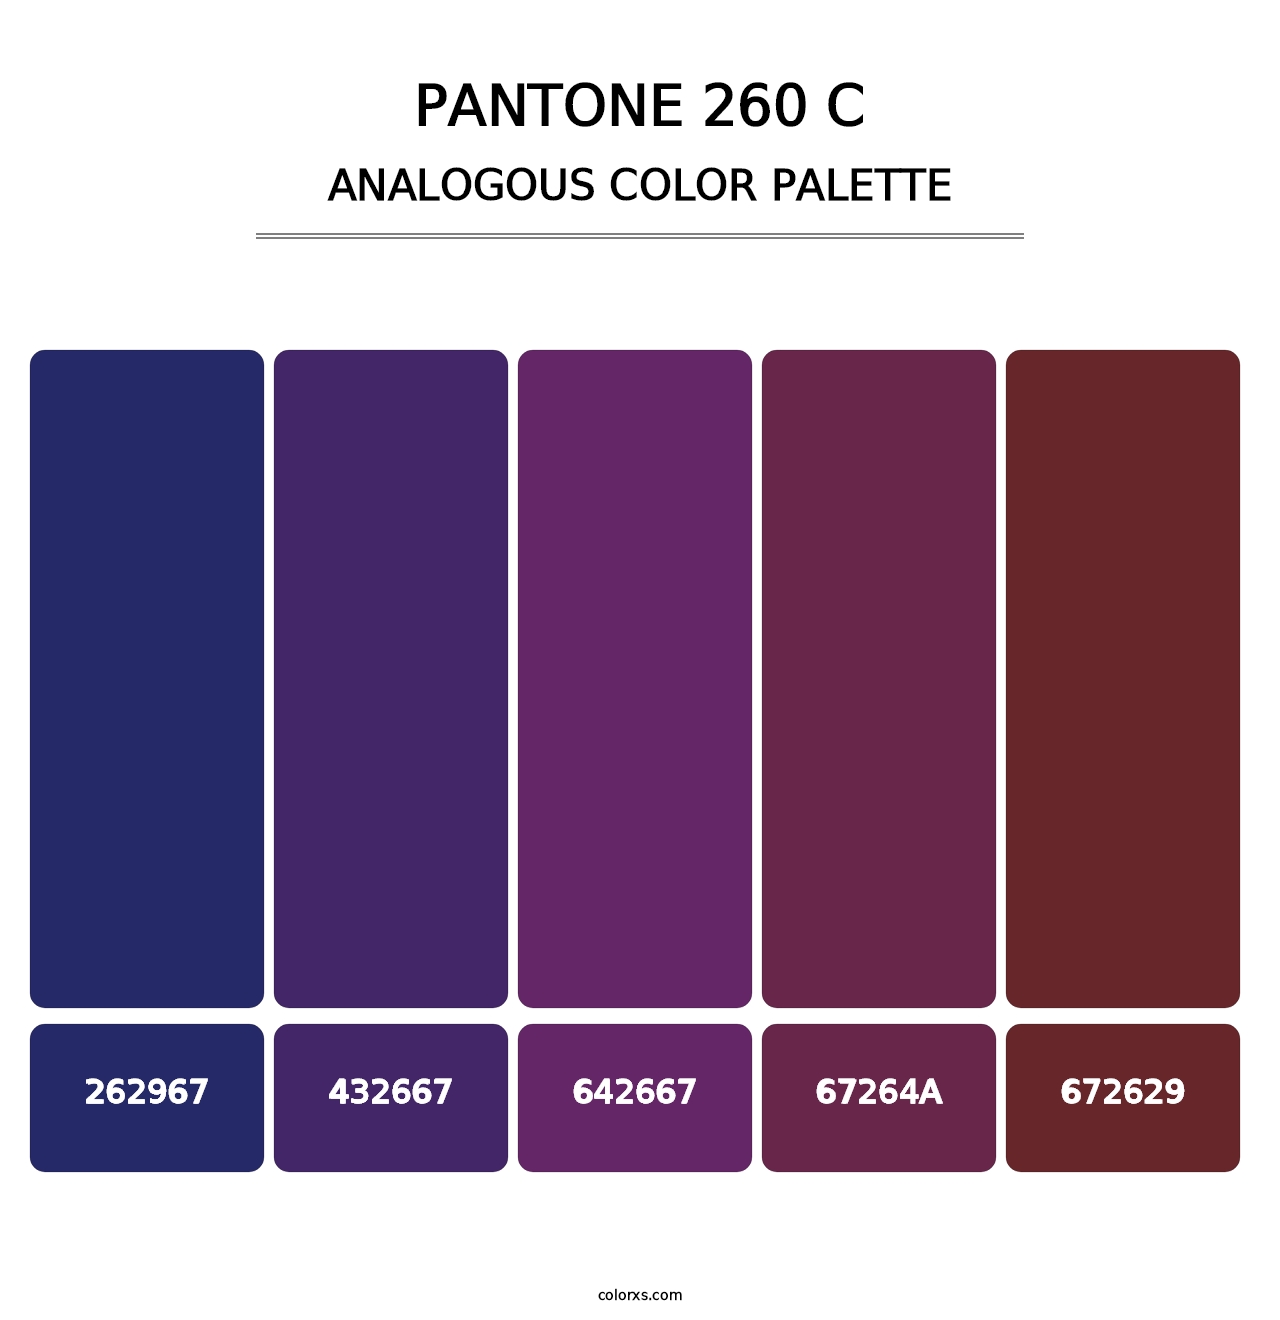 PANTONE 260 C - Analogous Color Palette